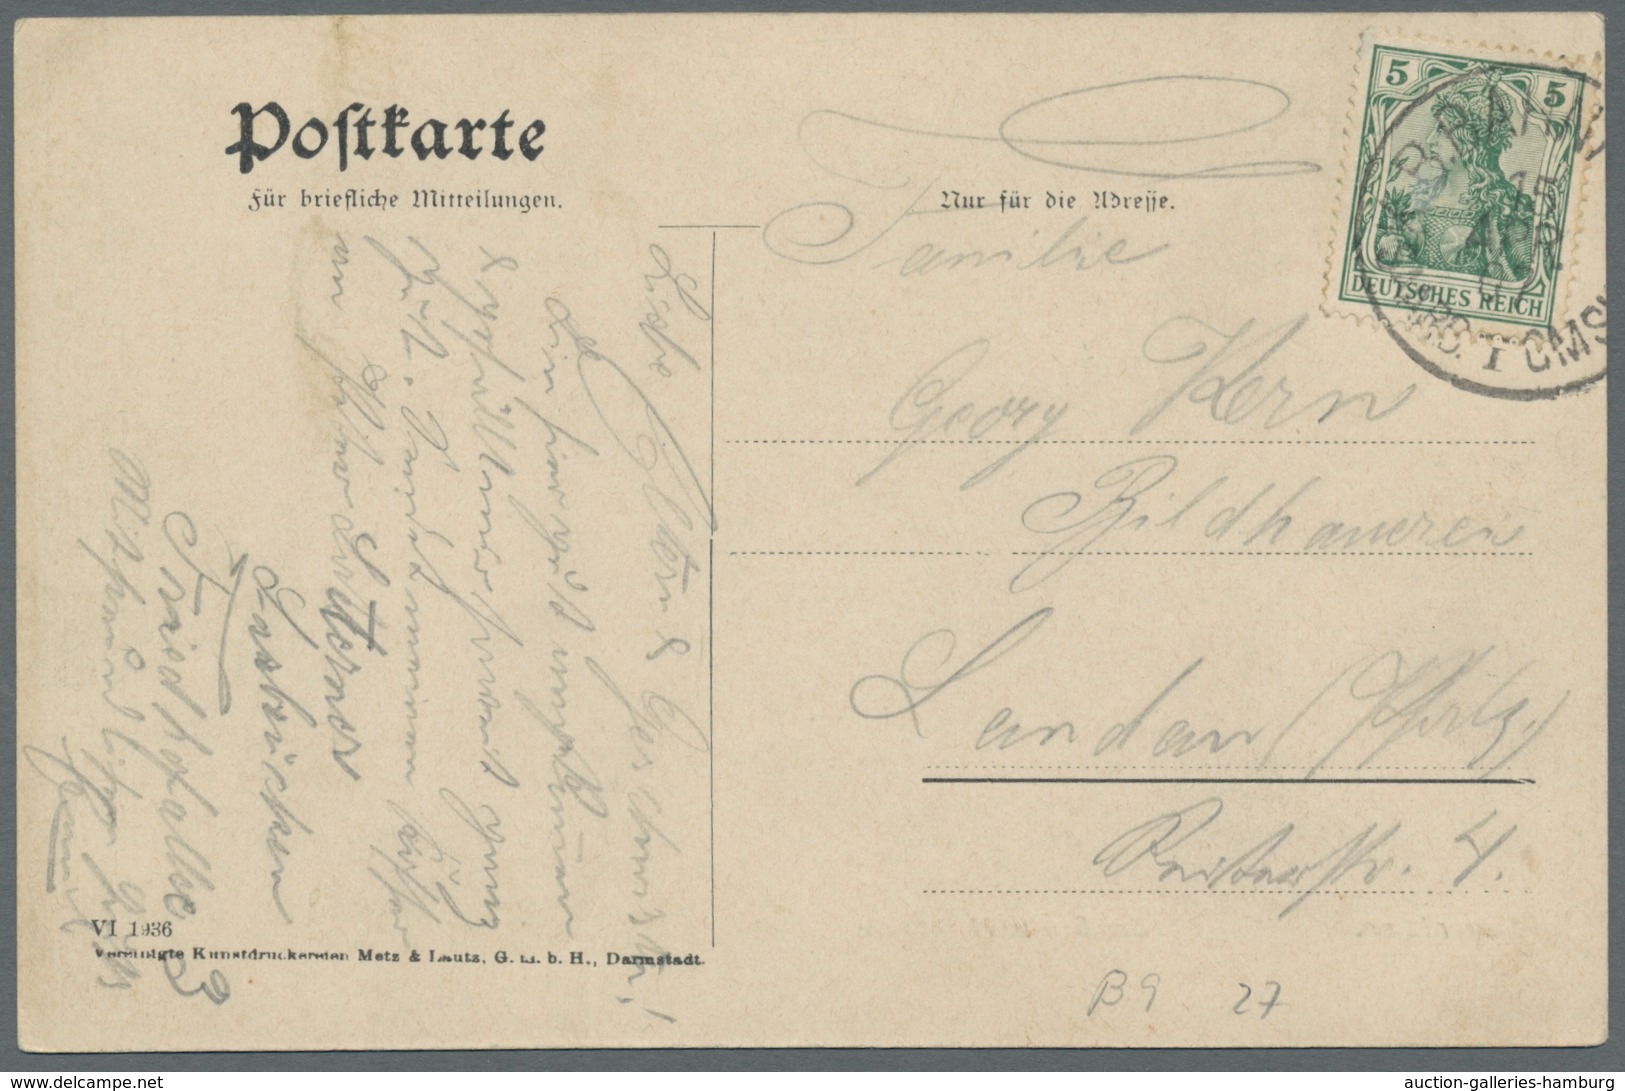 Deutsche Abstimmungsgebiete: Saargebiet: 1893-1920, 15 frank. Karten bzw. Ganzsachen mit Entwertunge